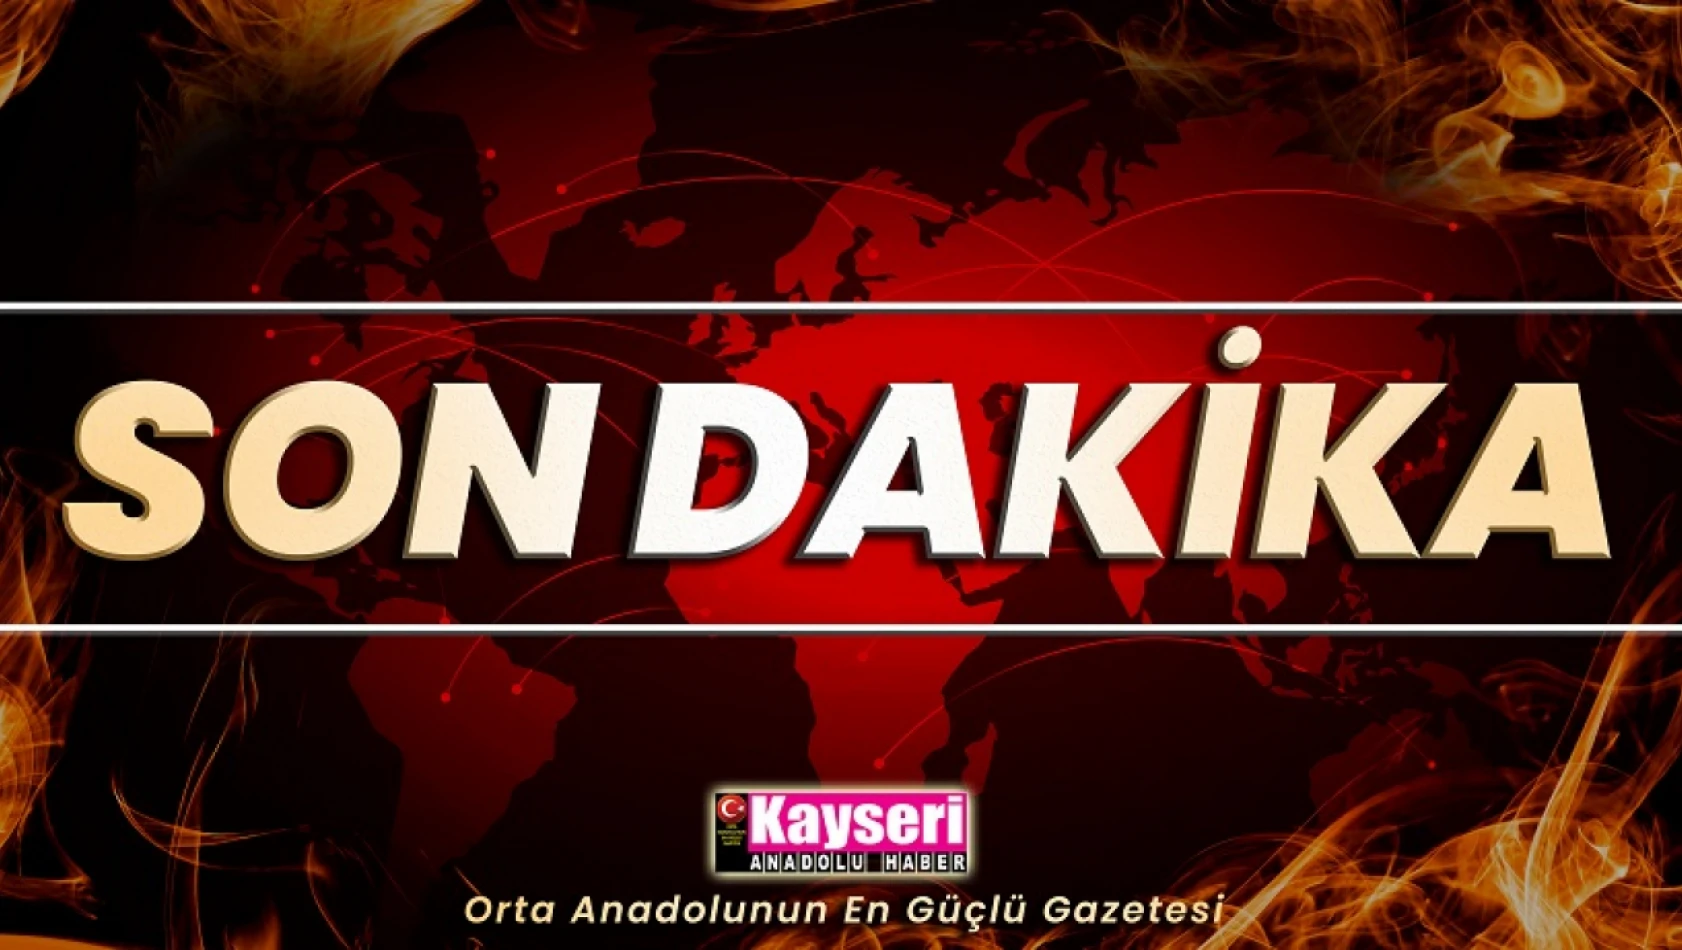 SON DAKİKA - Kayseri'de Küçük Çocuğu Taciz Eden Şahıs Tutuklandı!